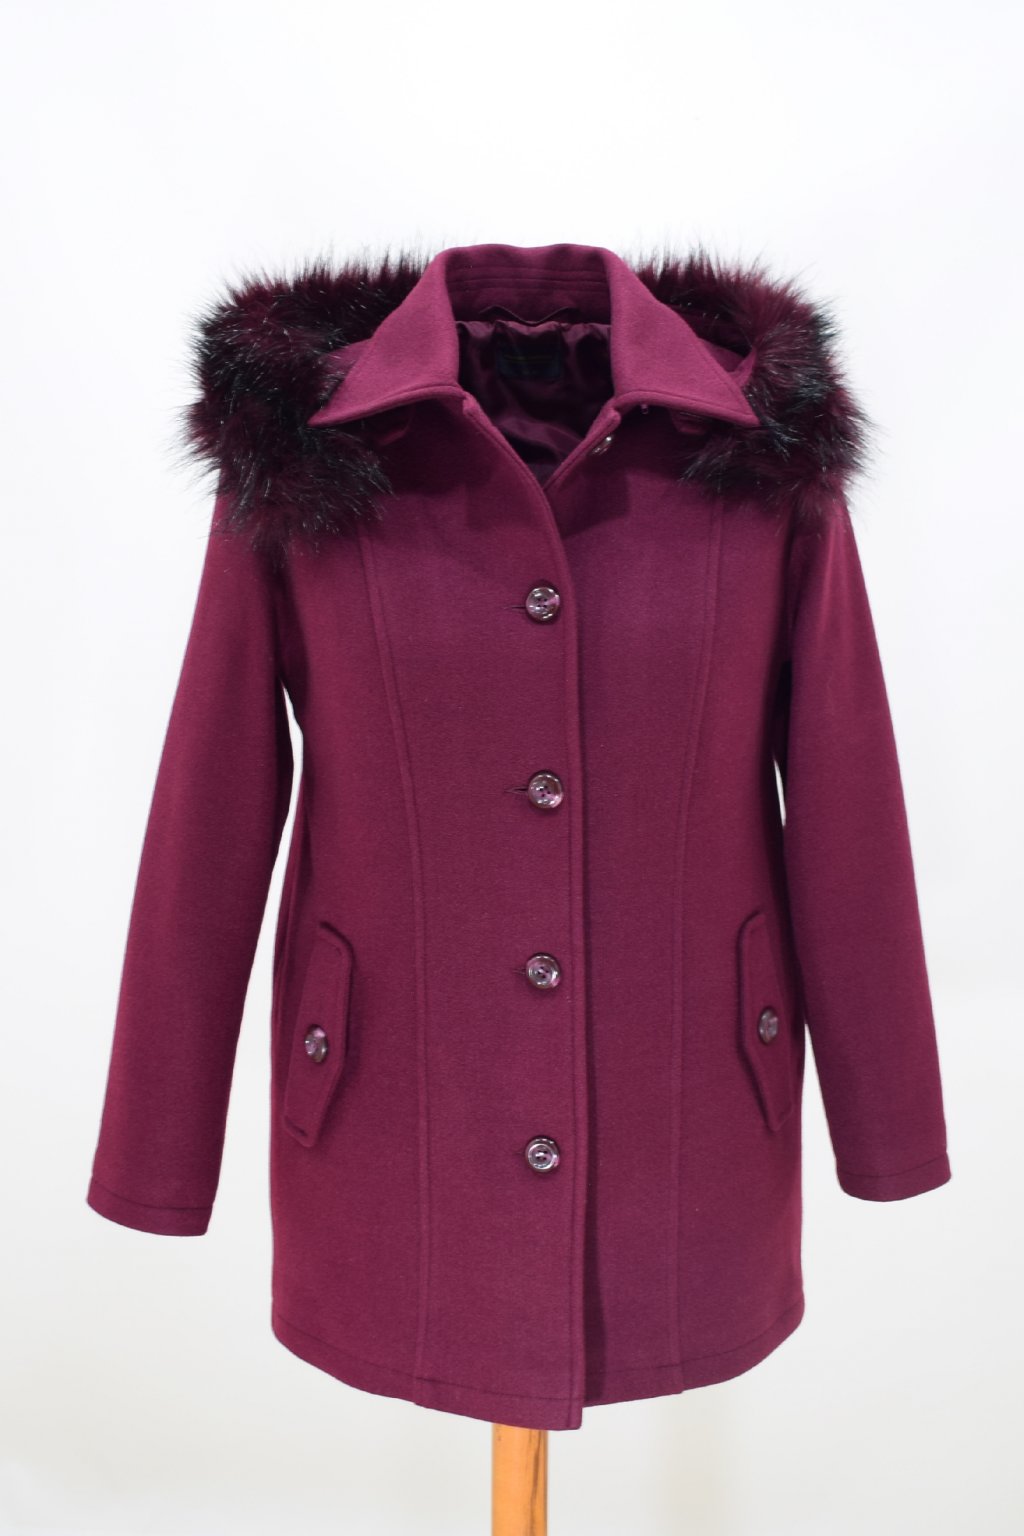 Dámský vínový zimní kabát Alice nadměrné velikosti.